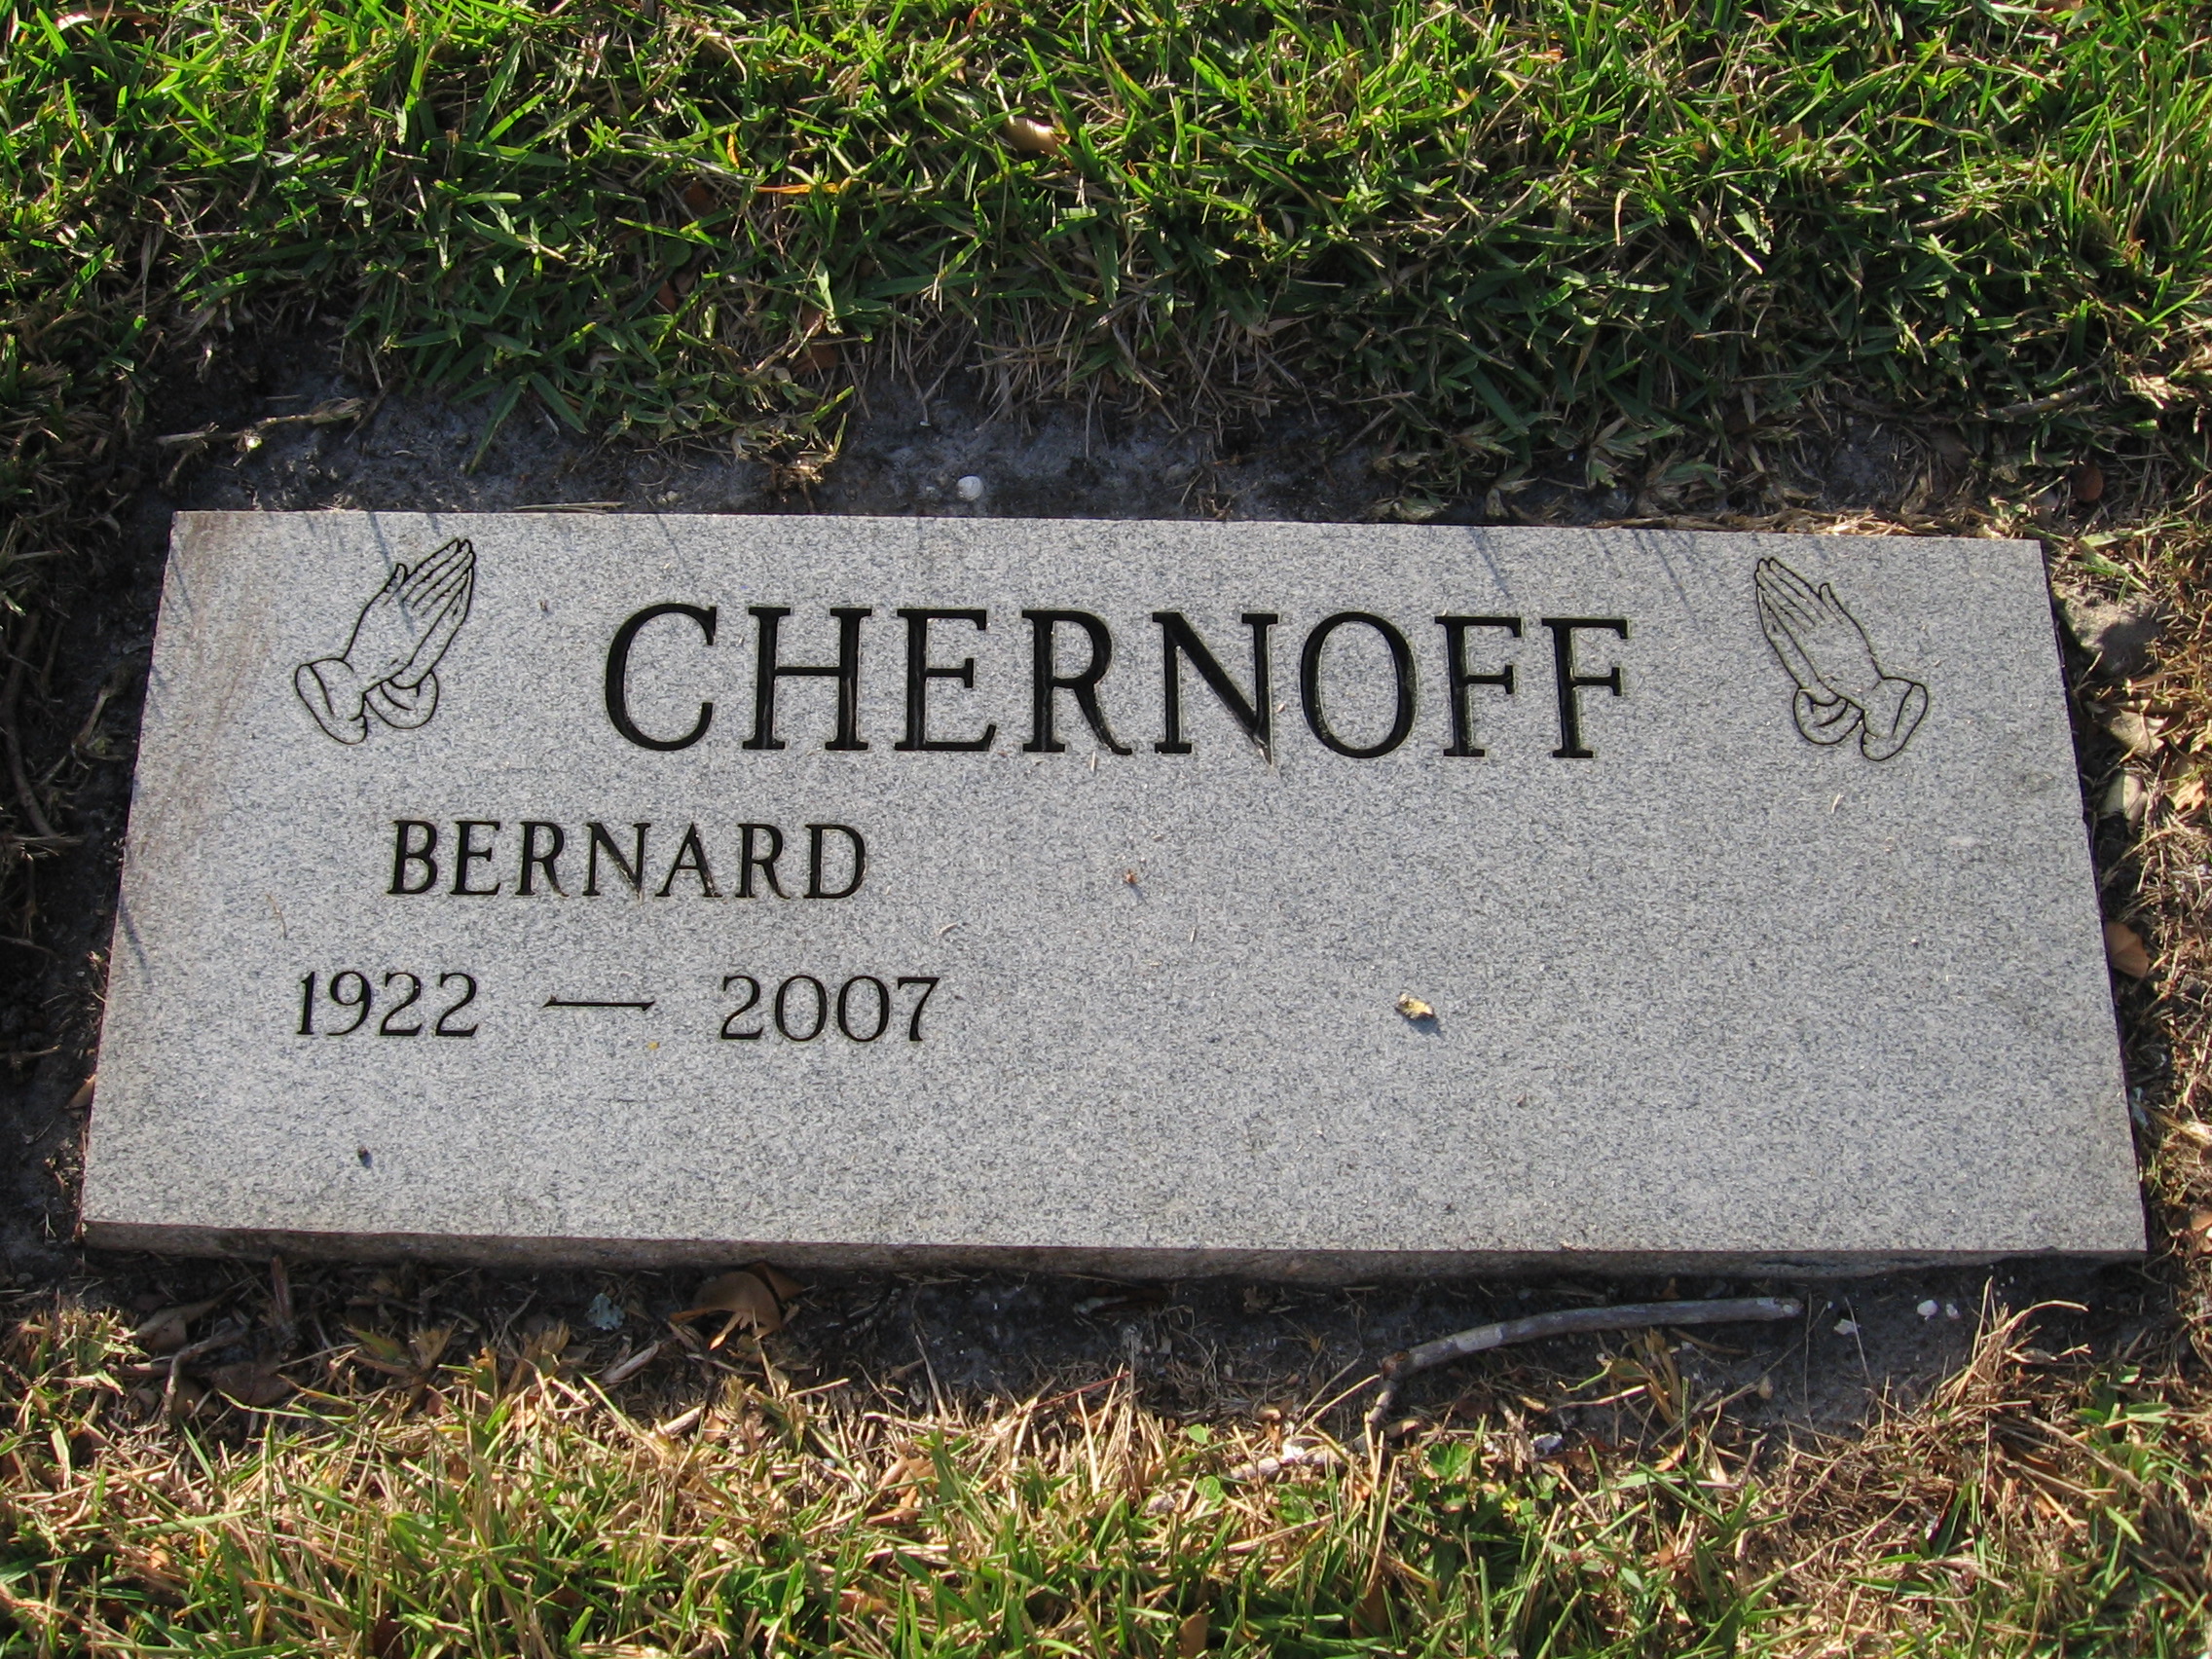 Bernard Chernoff